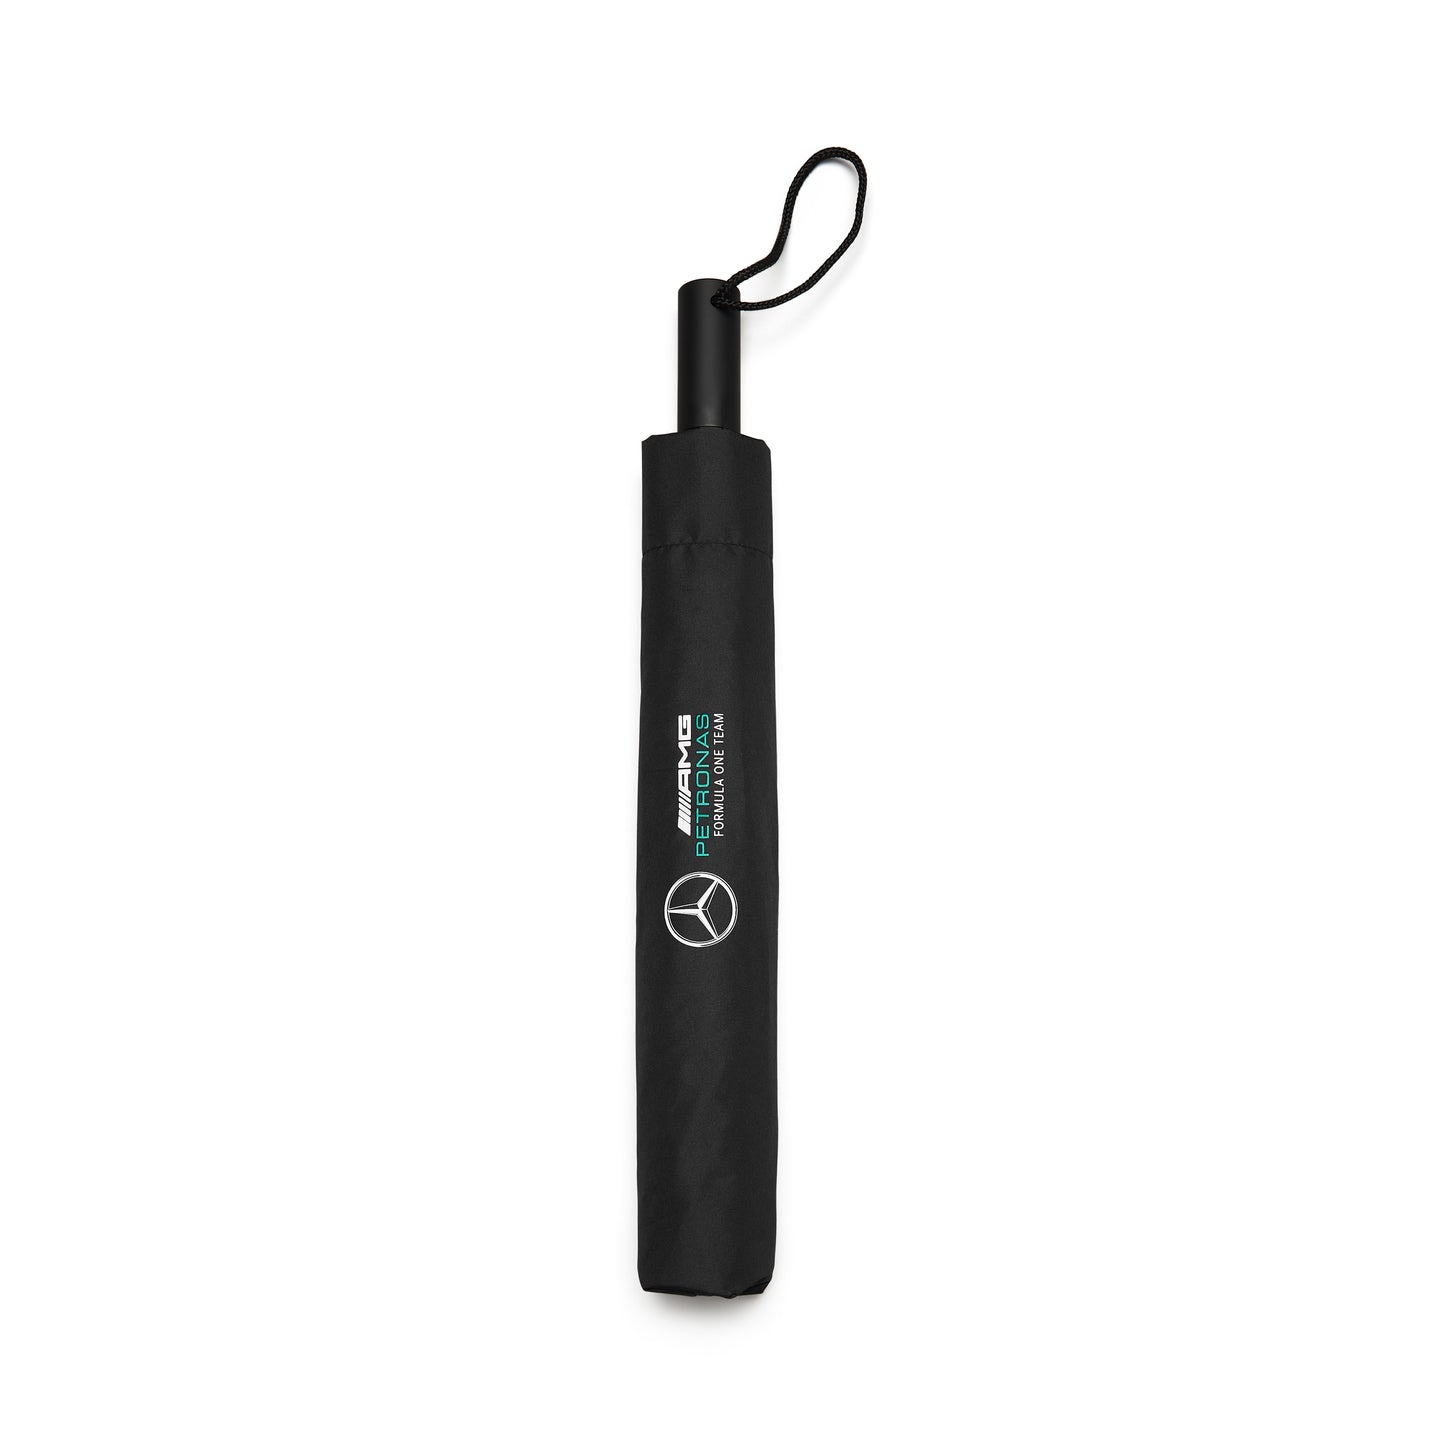 Mercedes fw compact umbrella